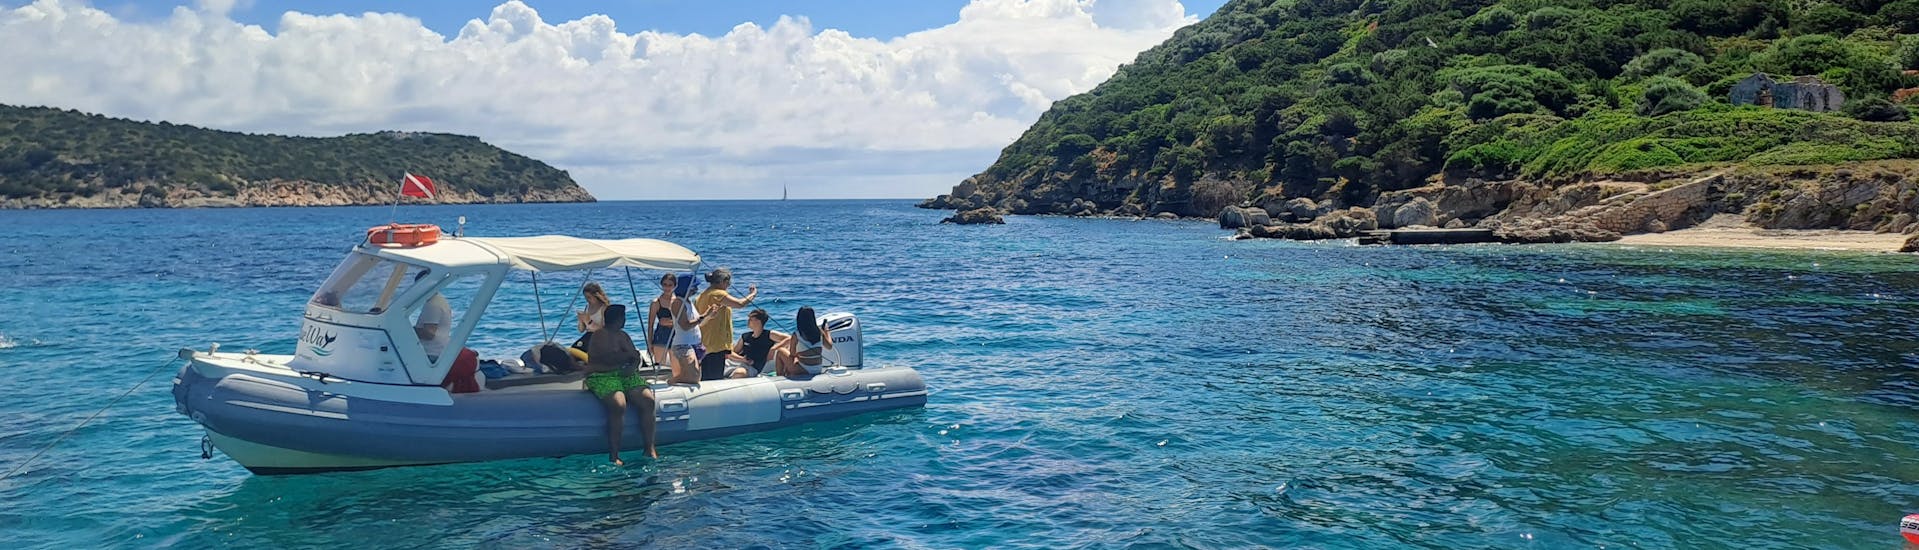 Vistadurante il giro in barca a Figarolo e Capo Figari con avvistamento di delfini & Snorkeling con Blue Way - Sea Experiences.